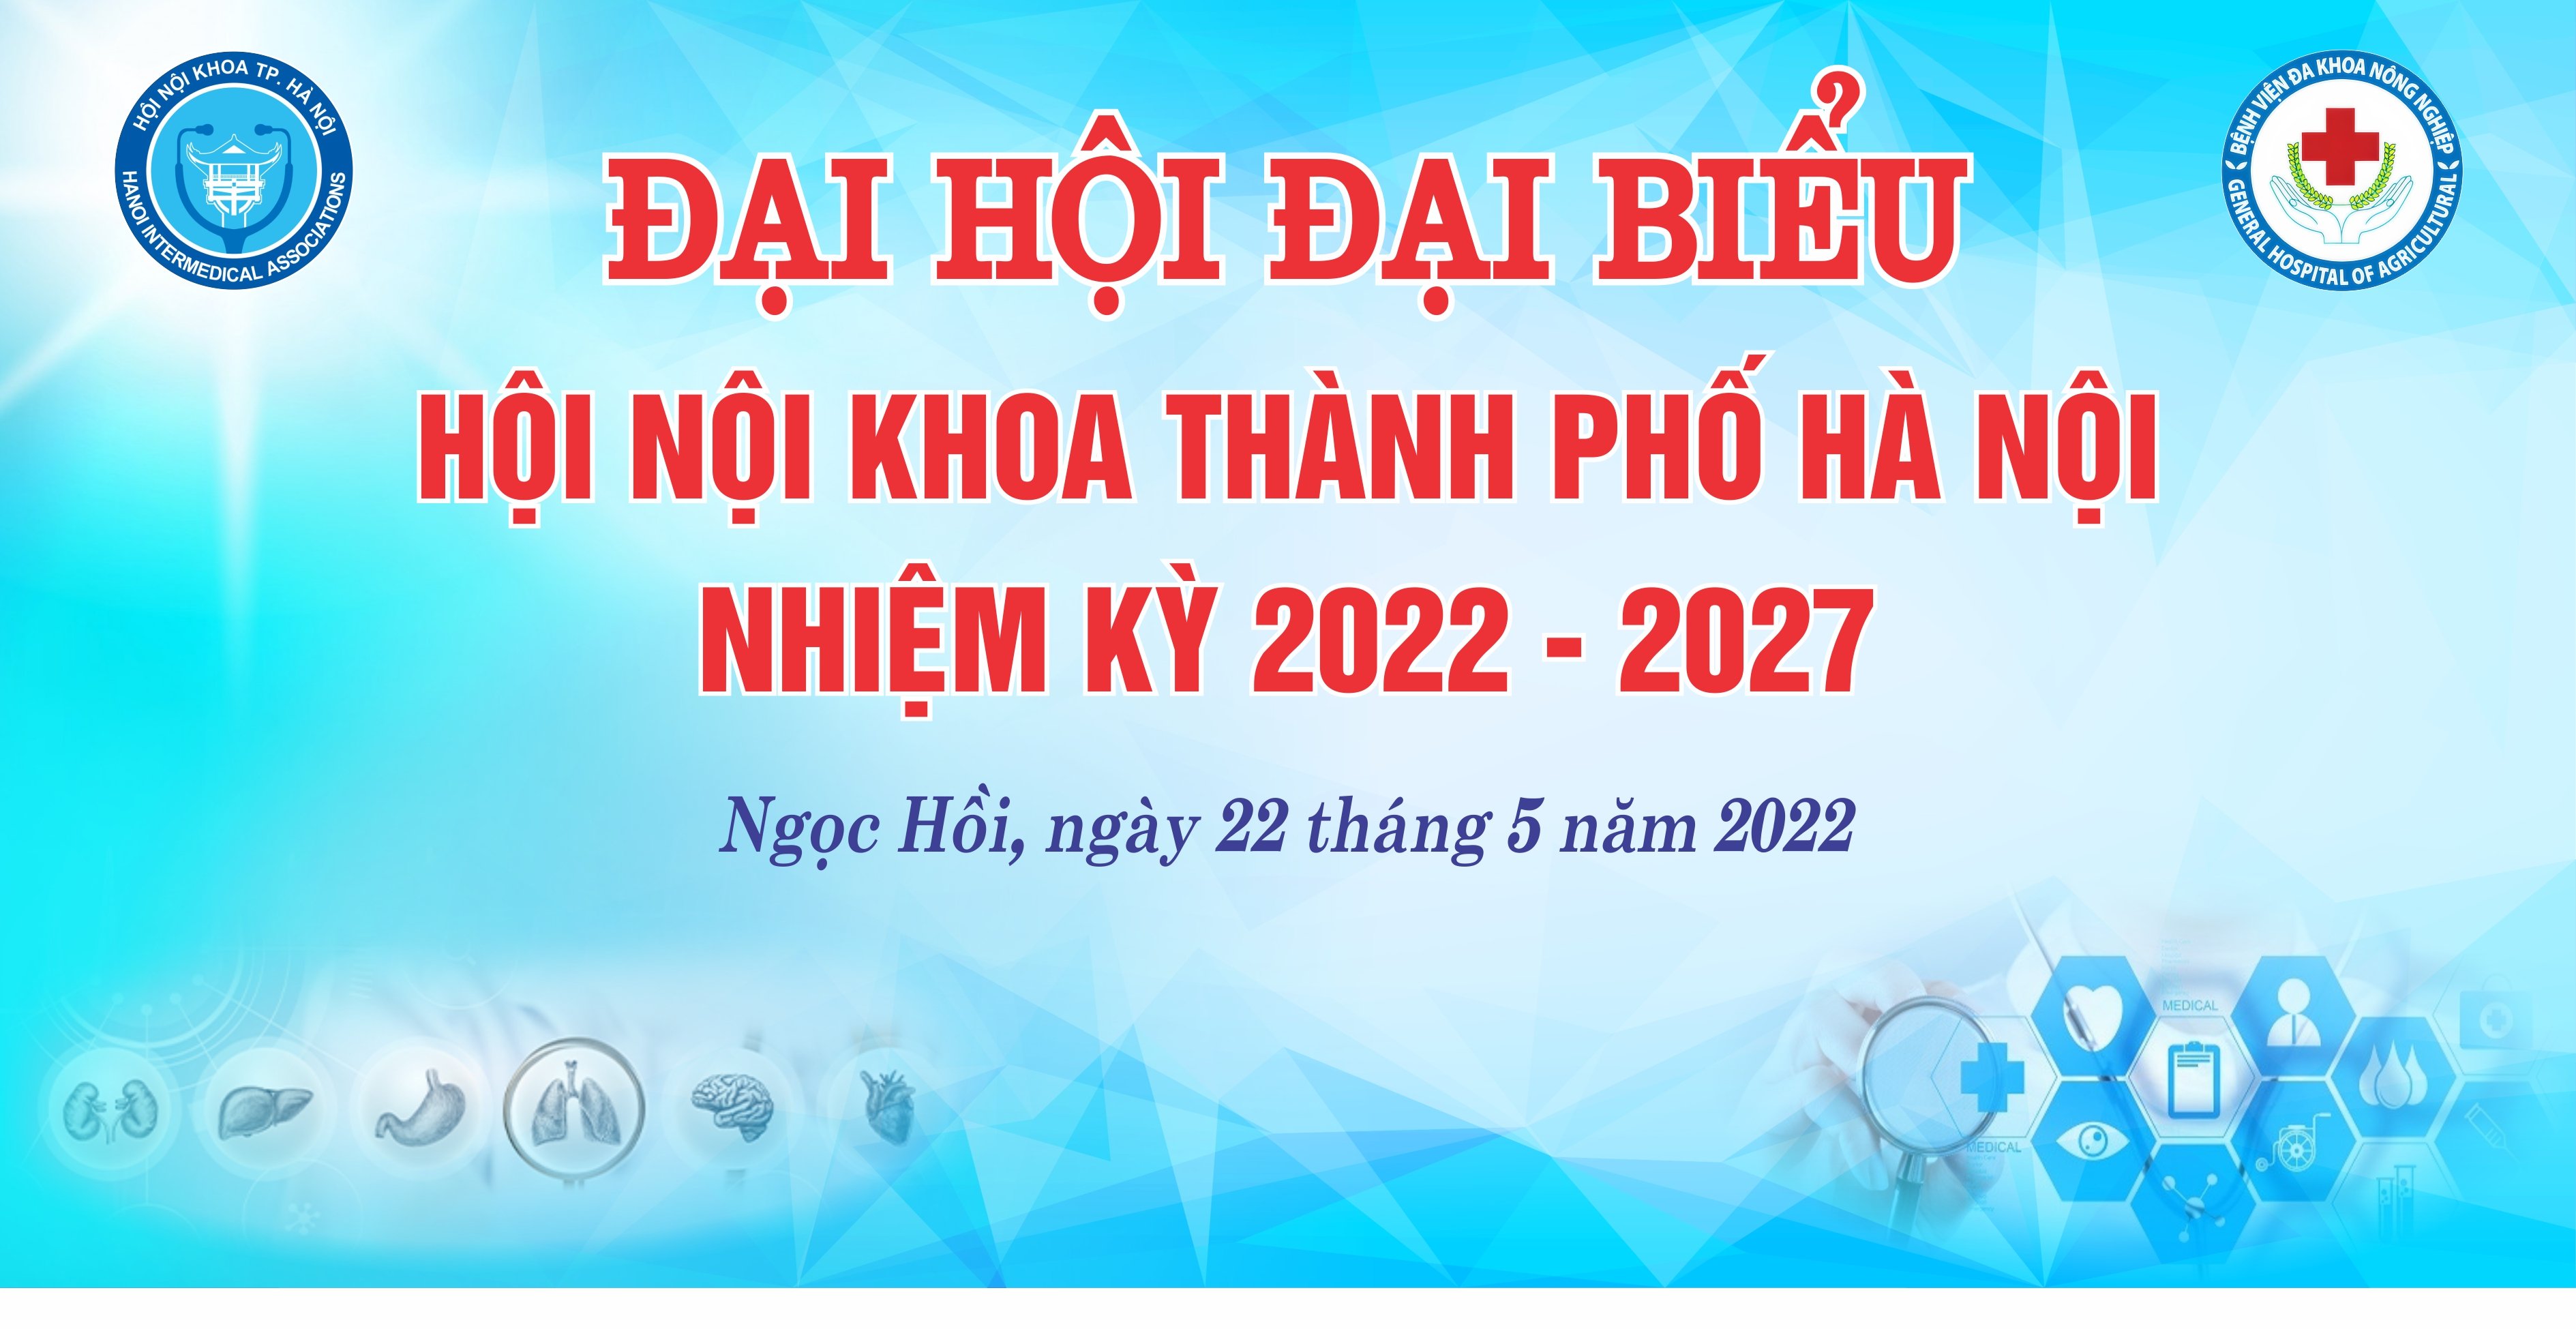 CHÀO MỪNG ĐẠI HỘI ĐẠI BIỂU HỘI NỘI KHOA THÀNH PHỐ HÀ NỘI (NHIỆM KỲ 2022-2027)